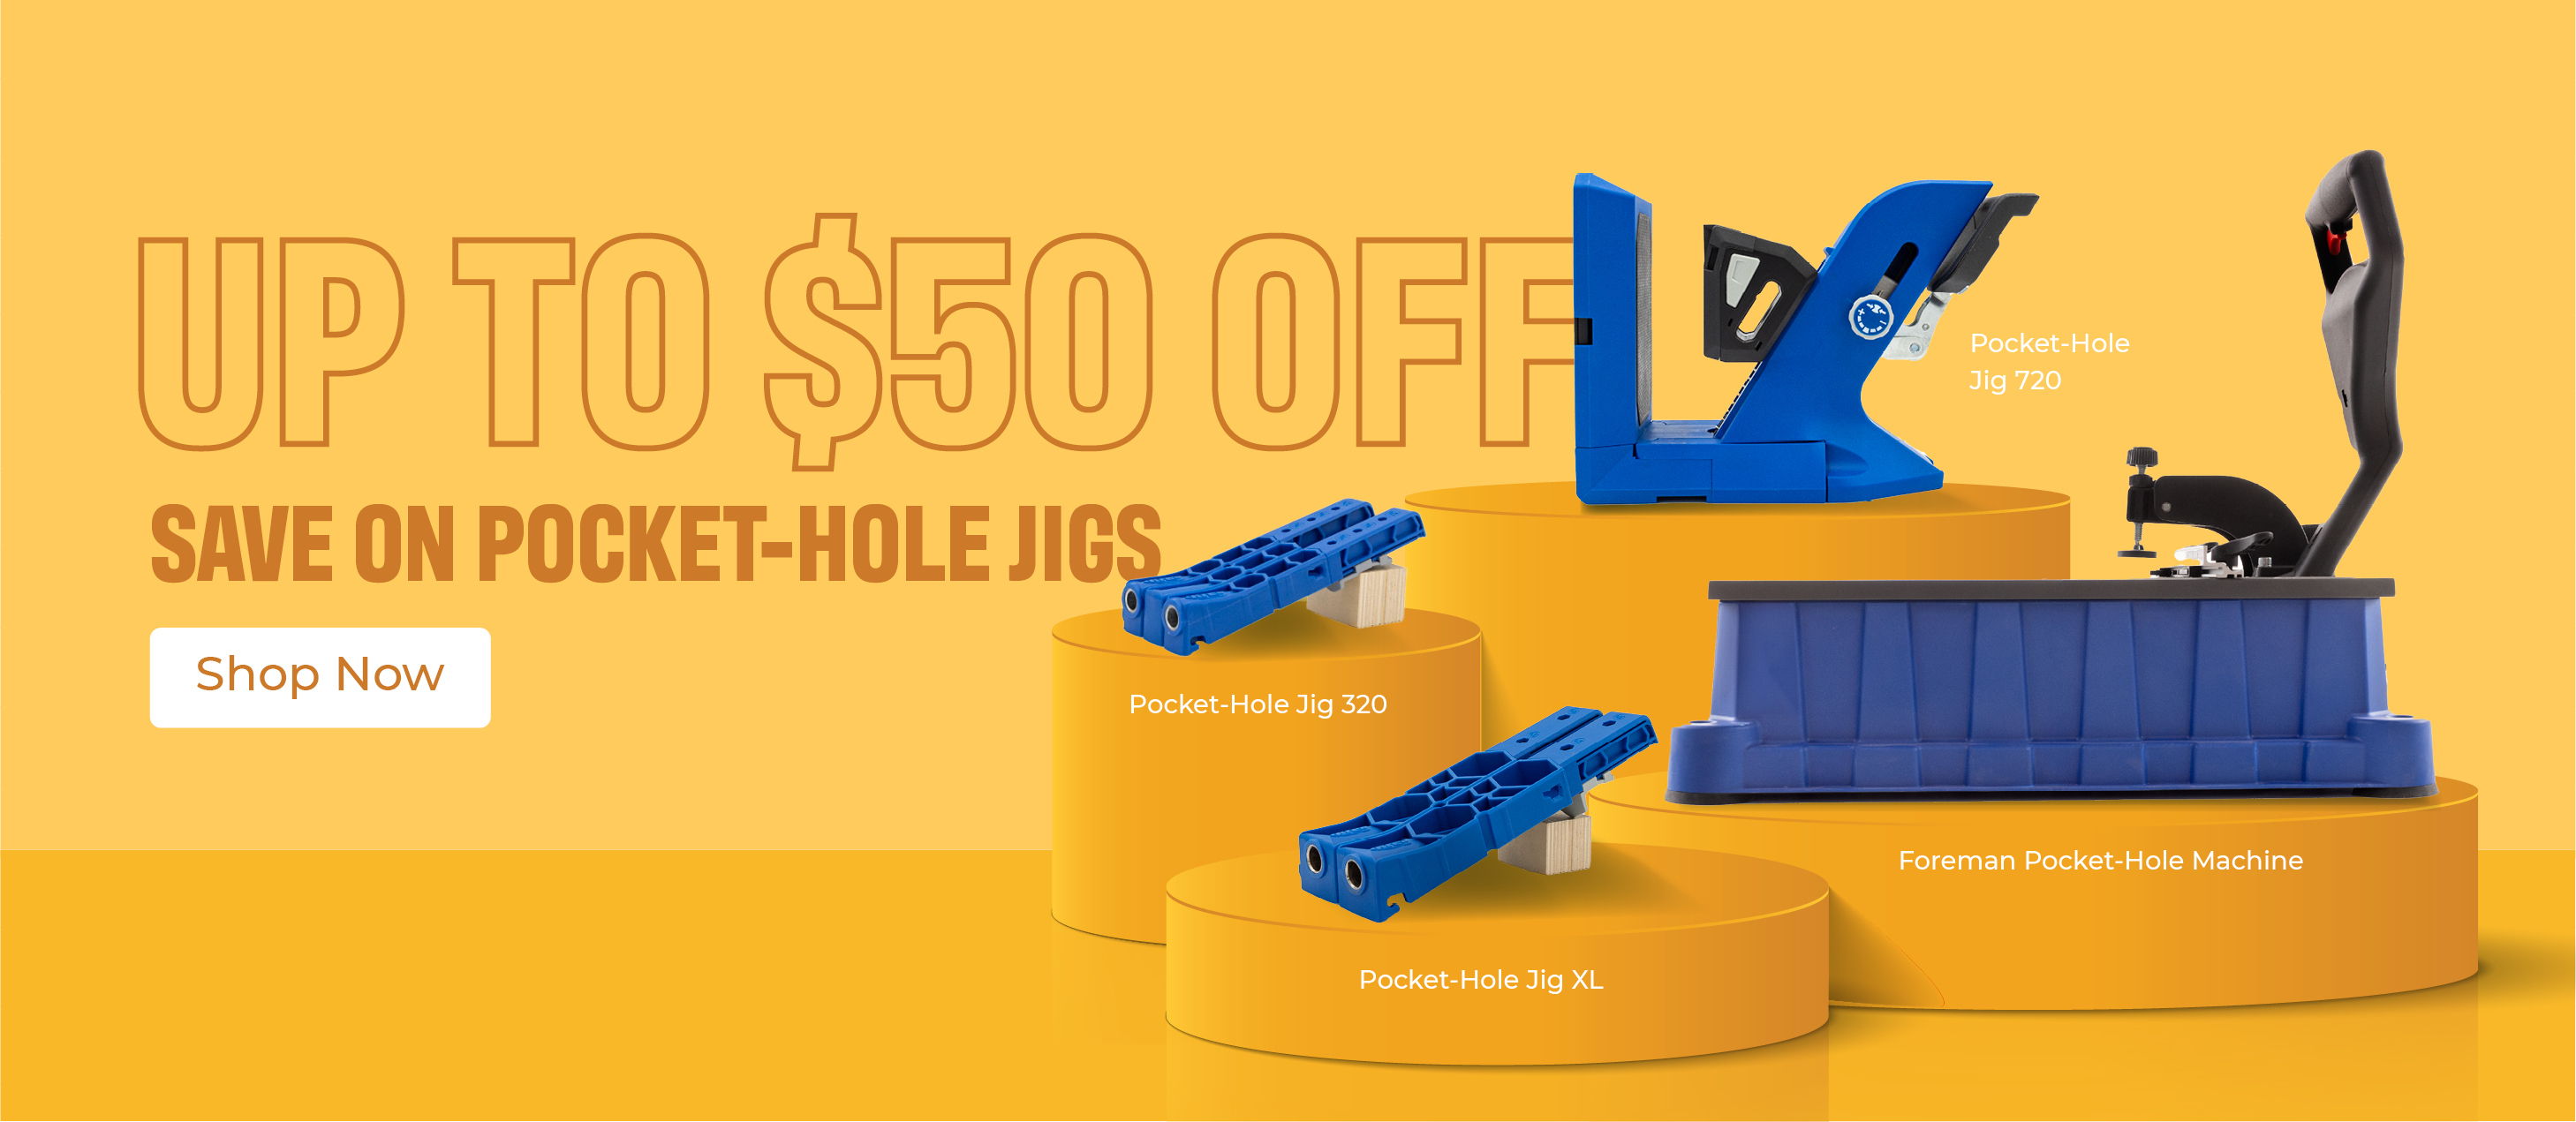 Pocket-Hole Jigs Sale